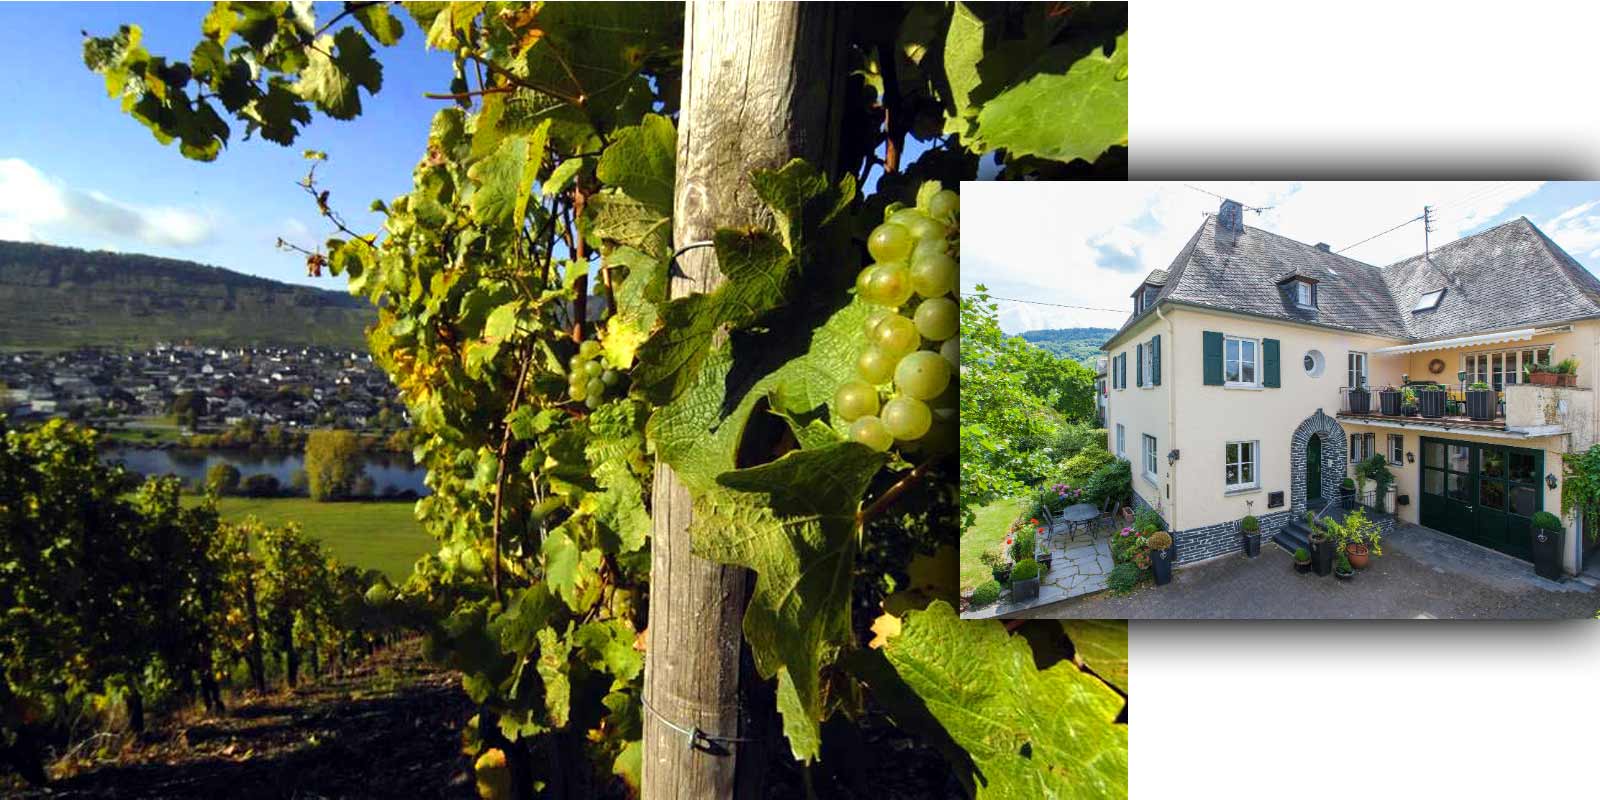 Grans-Fassian vingard - Mosel vinregion Gerhard Grans overtok vindyrkingsvirksomheten fra sin far Matthias i 1982 og utvidet det 4 hektar store vinmarksarealet til 9,5 hektar i dag.88% av det er beplantet med Riesling, 10% Pinot Blanc og 2% Pinot Gris. Vingardens beste lokasjoner er ogsa klassifiserte lokasjoner - de er klassifisert i hoeyeste dyrkingskategori.